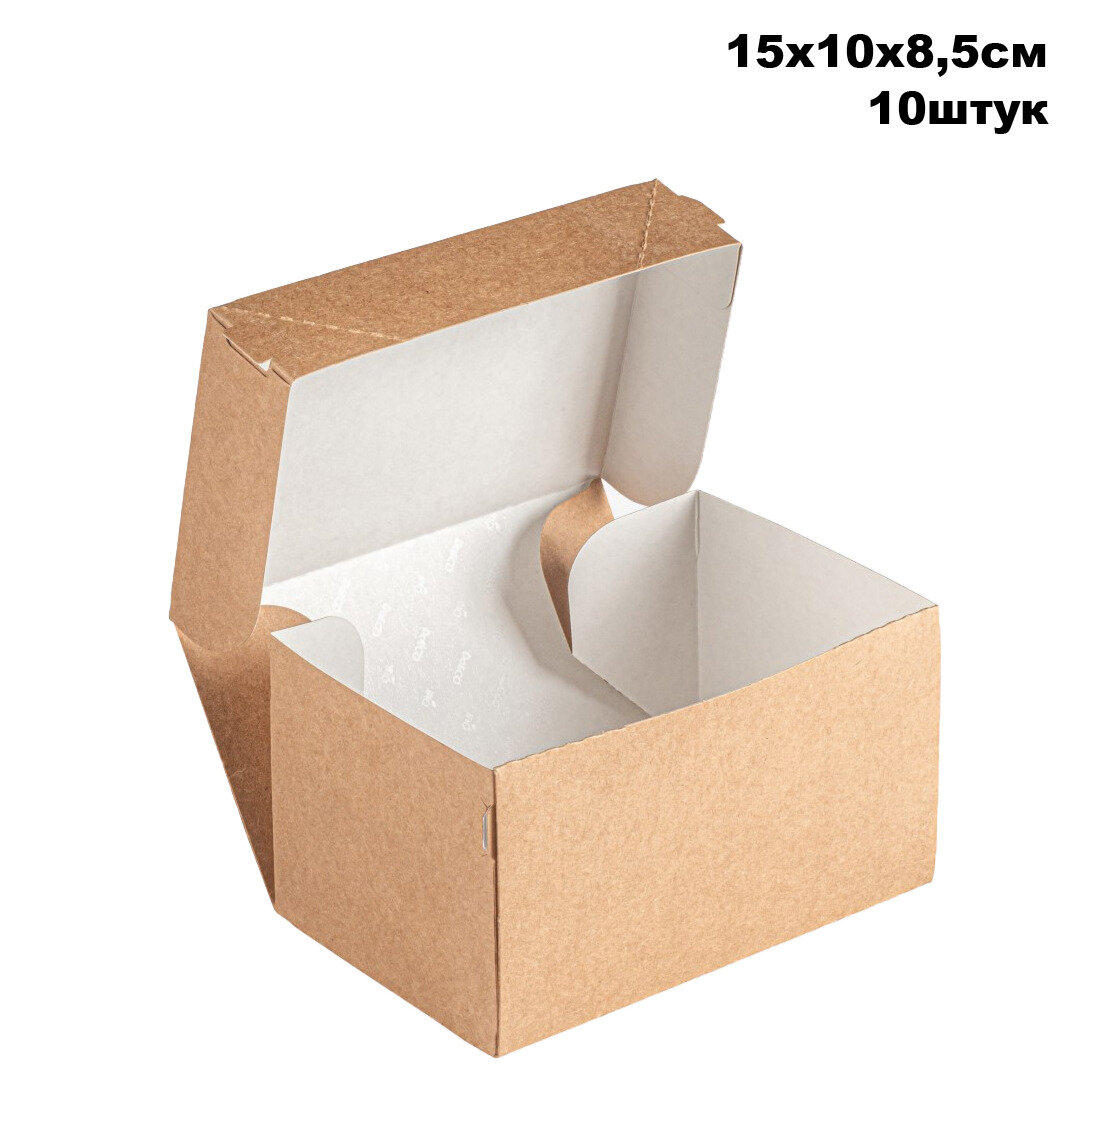 Крафт коробка для десерта - 15х10х8,5 см, 10штук